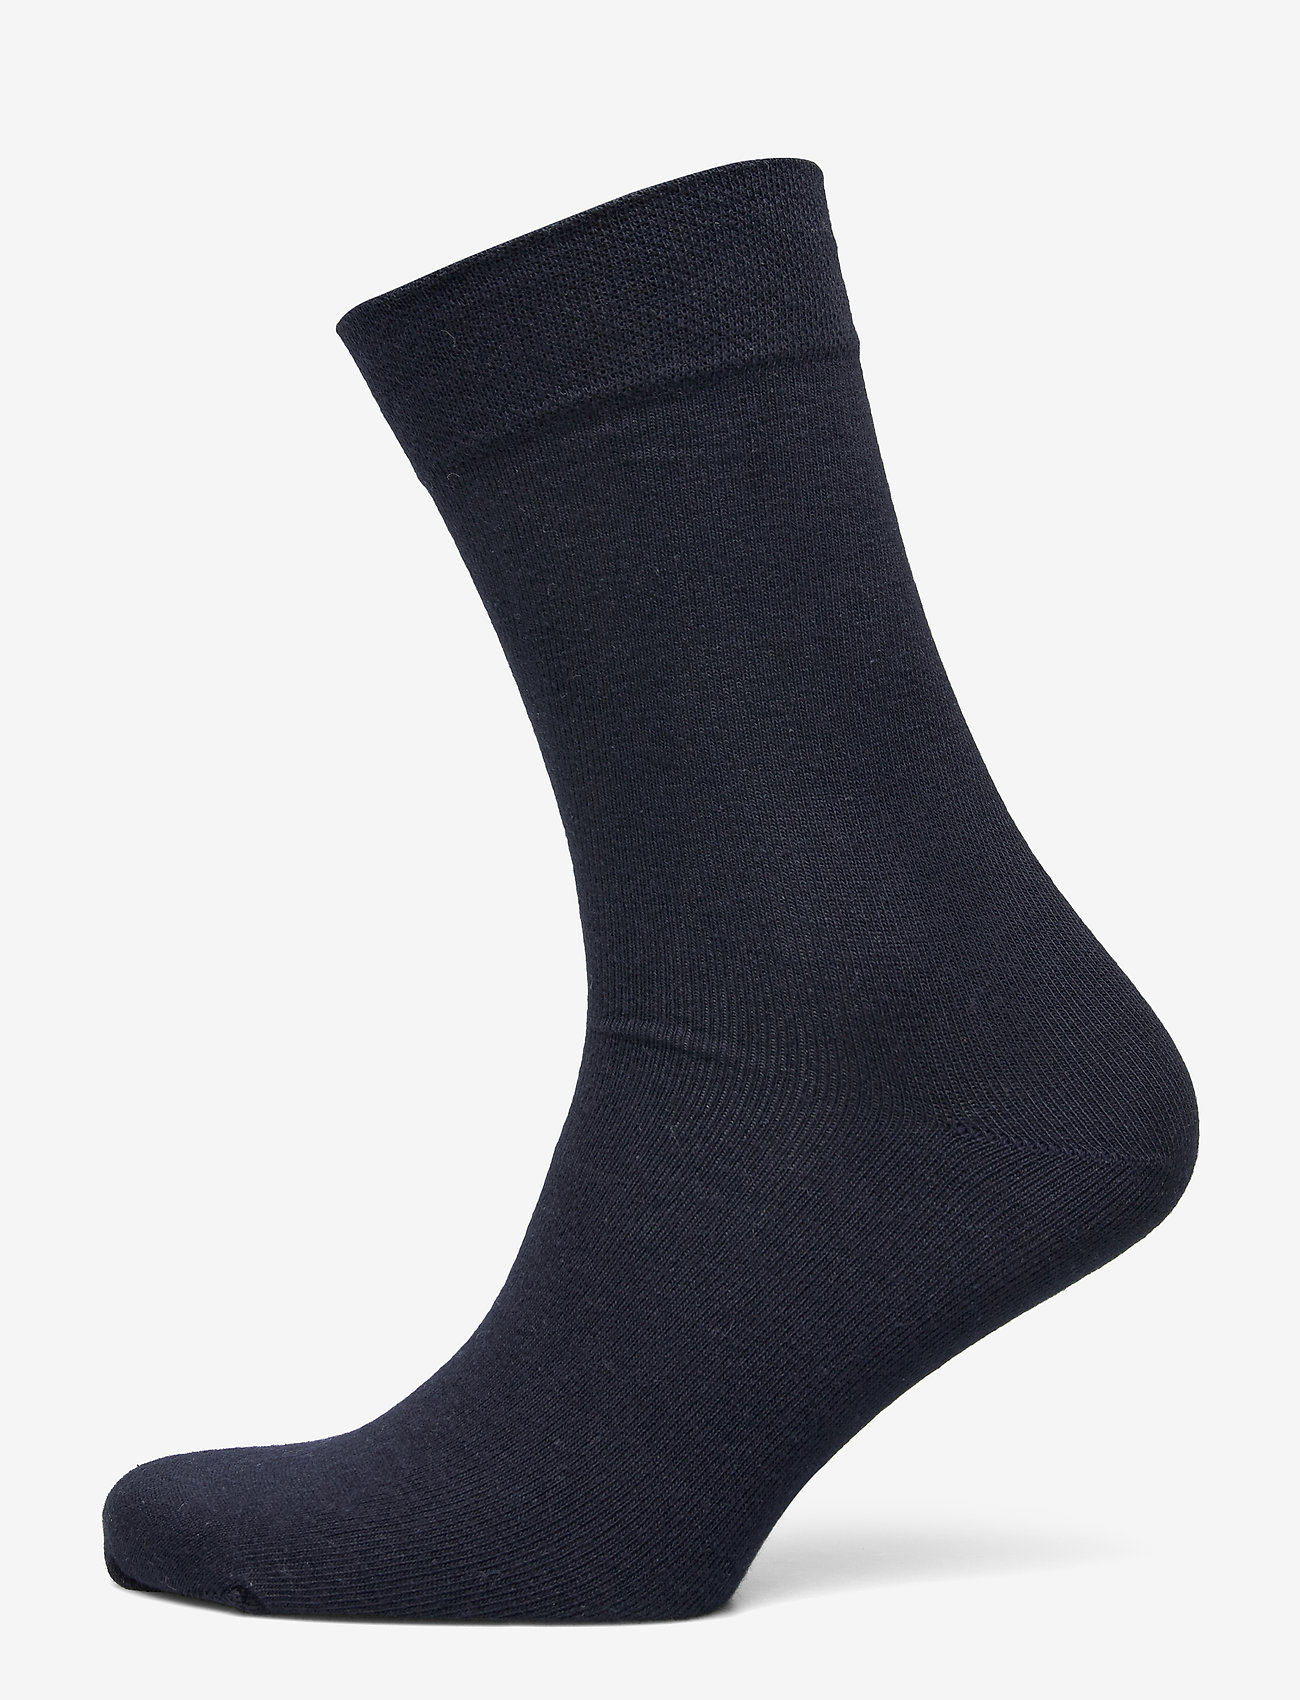 Decoy - DECOY comfort ankle socks - crew sokken - navy - 0